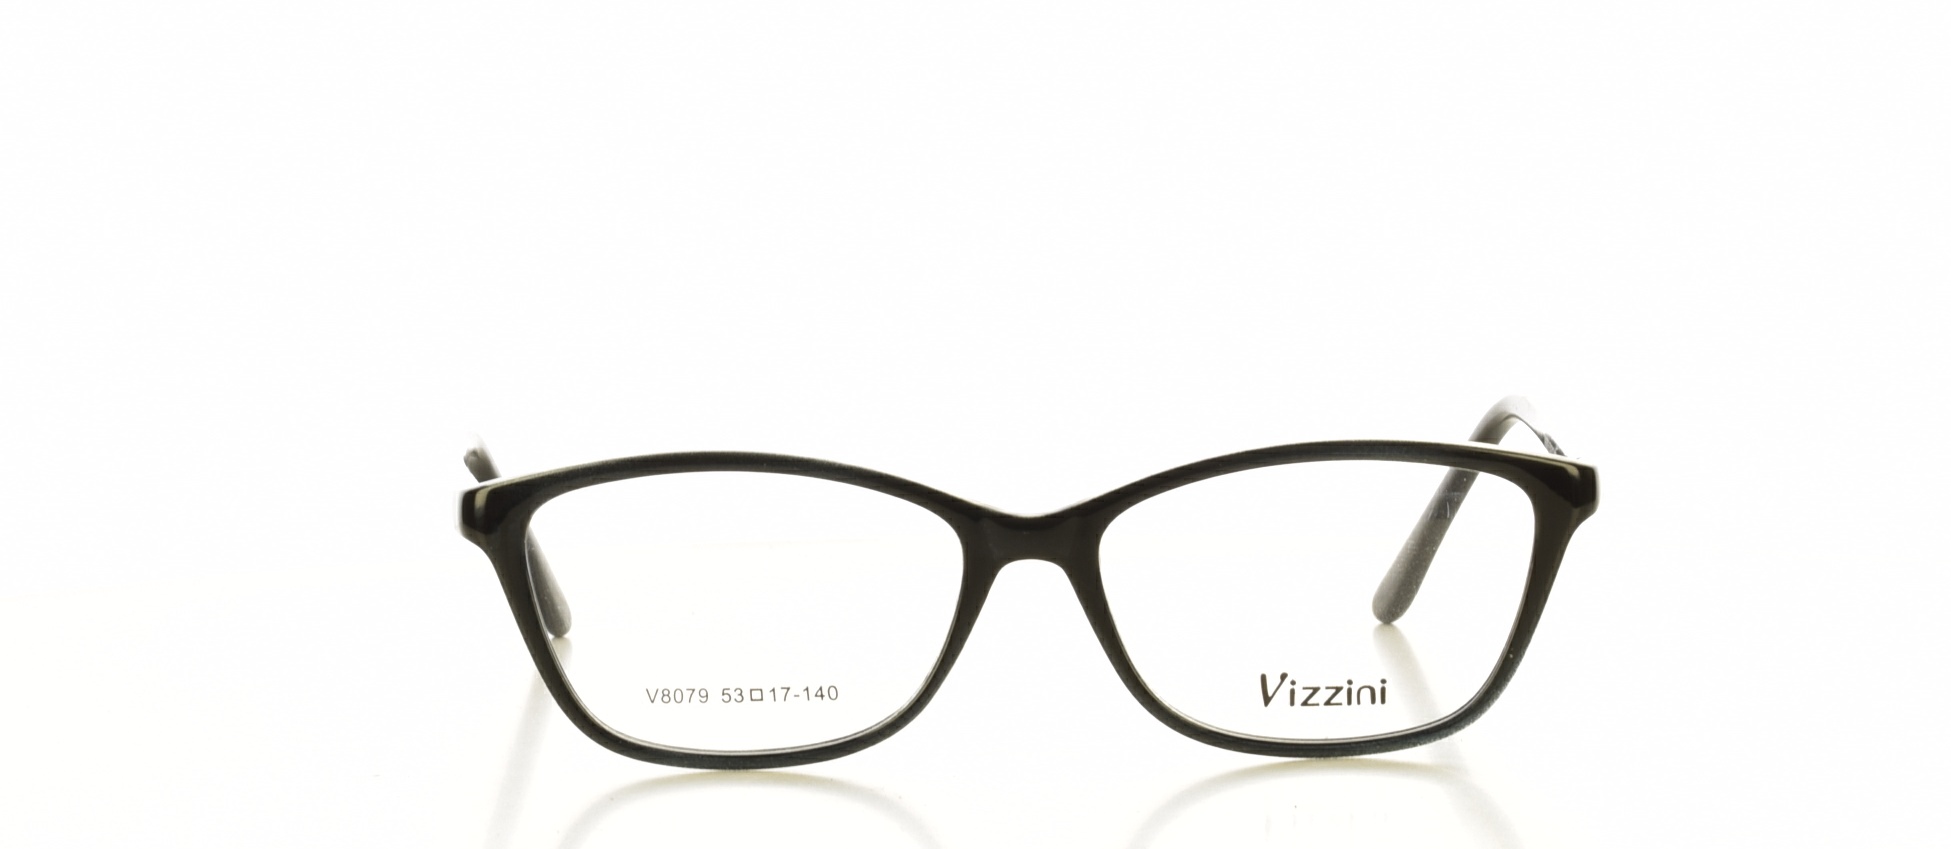 Rama ochelari vedere Vizzini